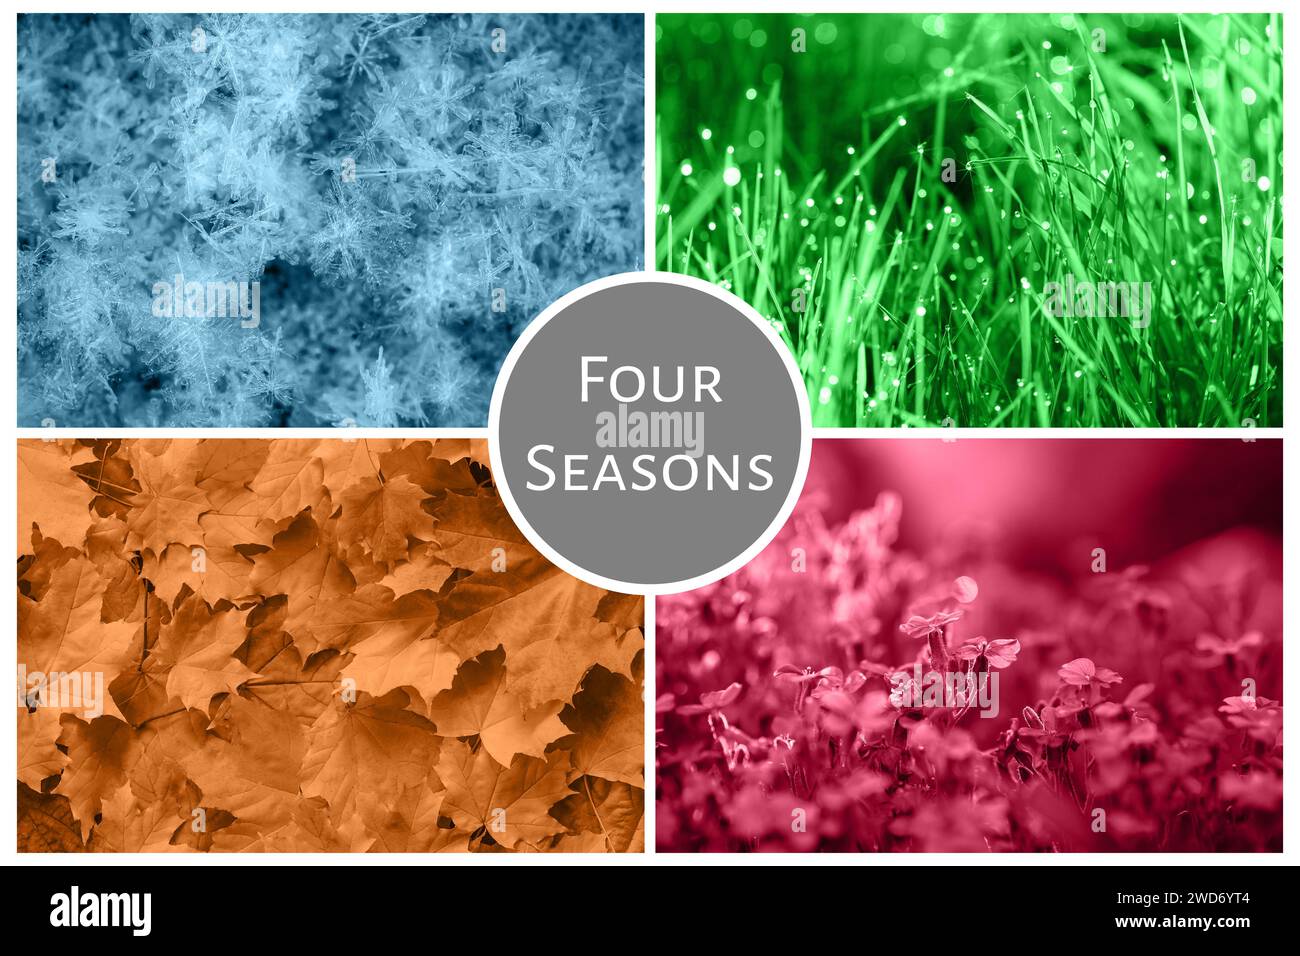 Four Seasons Nature Collage: Winter, Frühling, Sommer, Herbst. Blauer Schnee, grünes Gras, rote Blumen und orangene Blätter. Collagewechsel der Jahreszeit Stockfoto